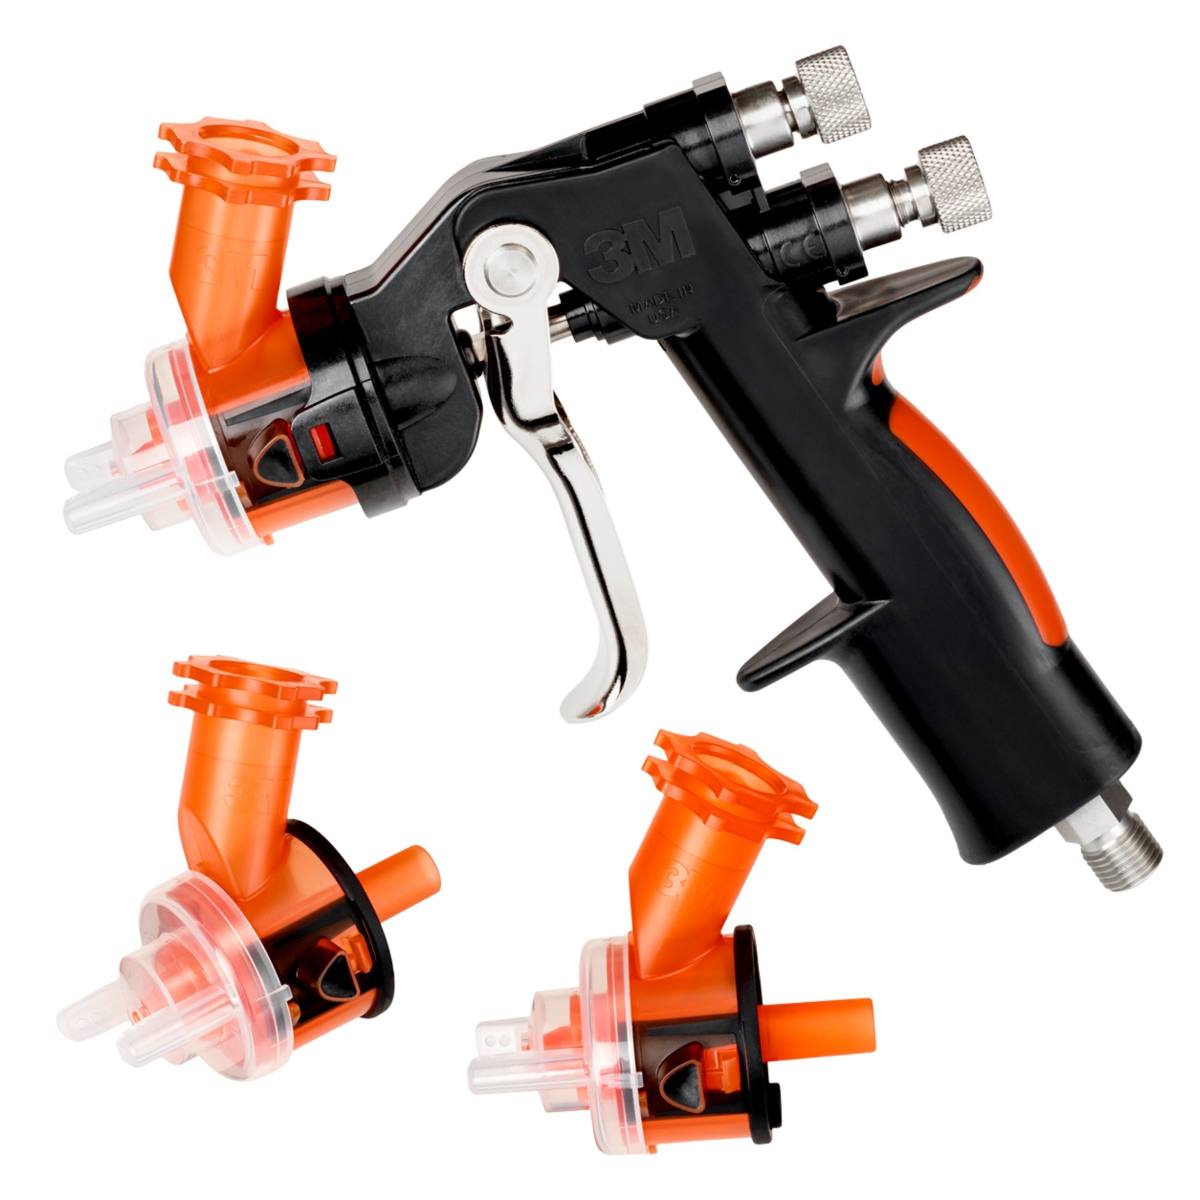 Pistola 3M Accuspray HG14, contenuto della confezione: 1x pistola, 3x teste degli ugelli 1,4 mm arancione 16612, 1x manometro #16577